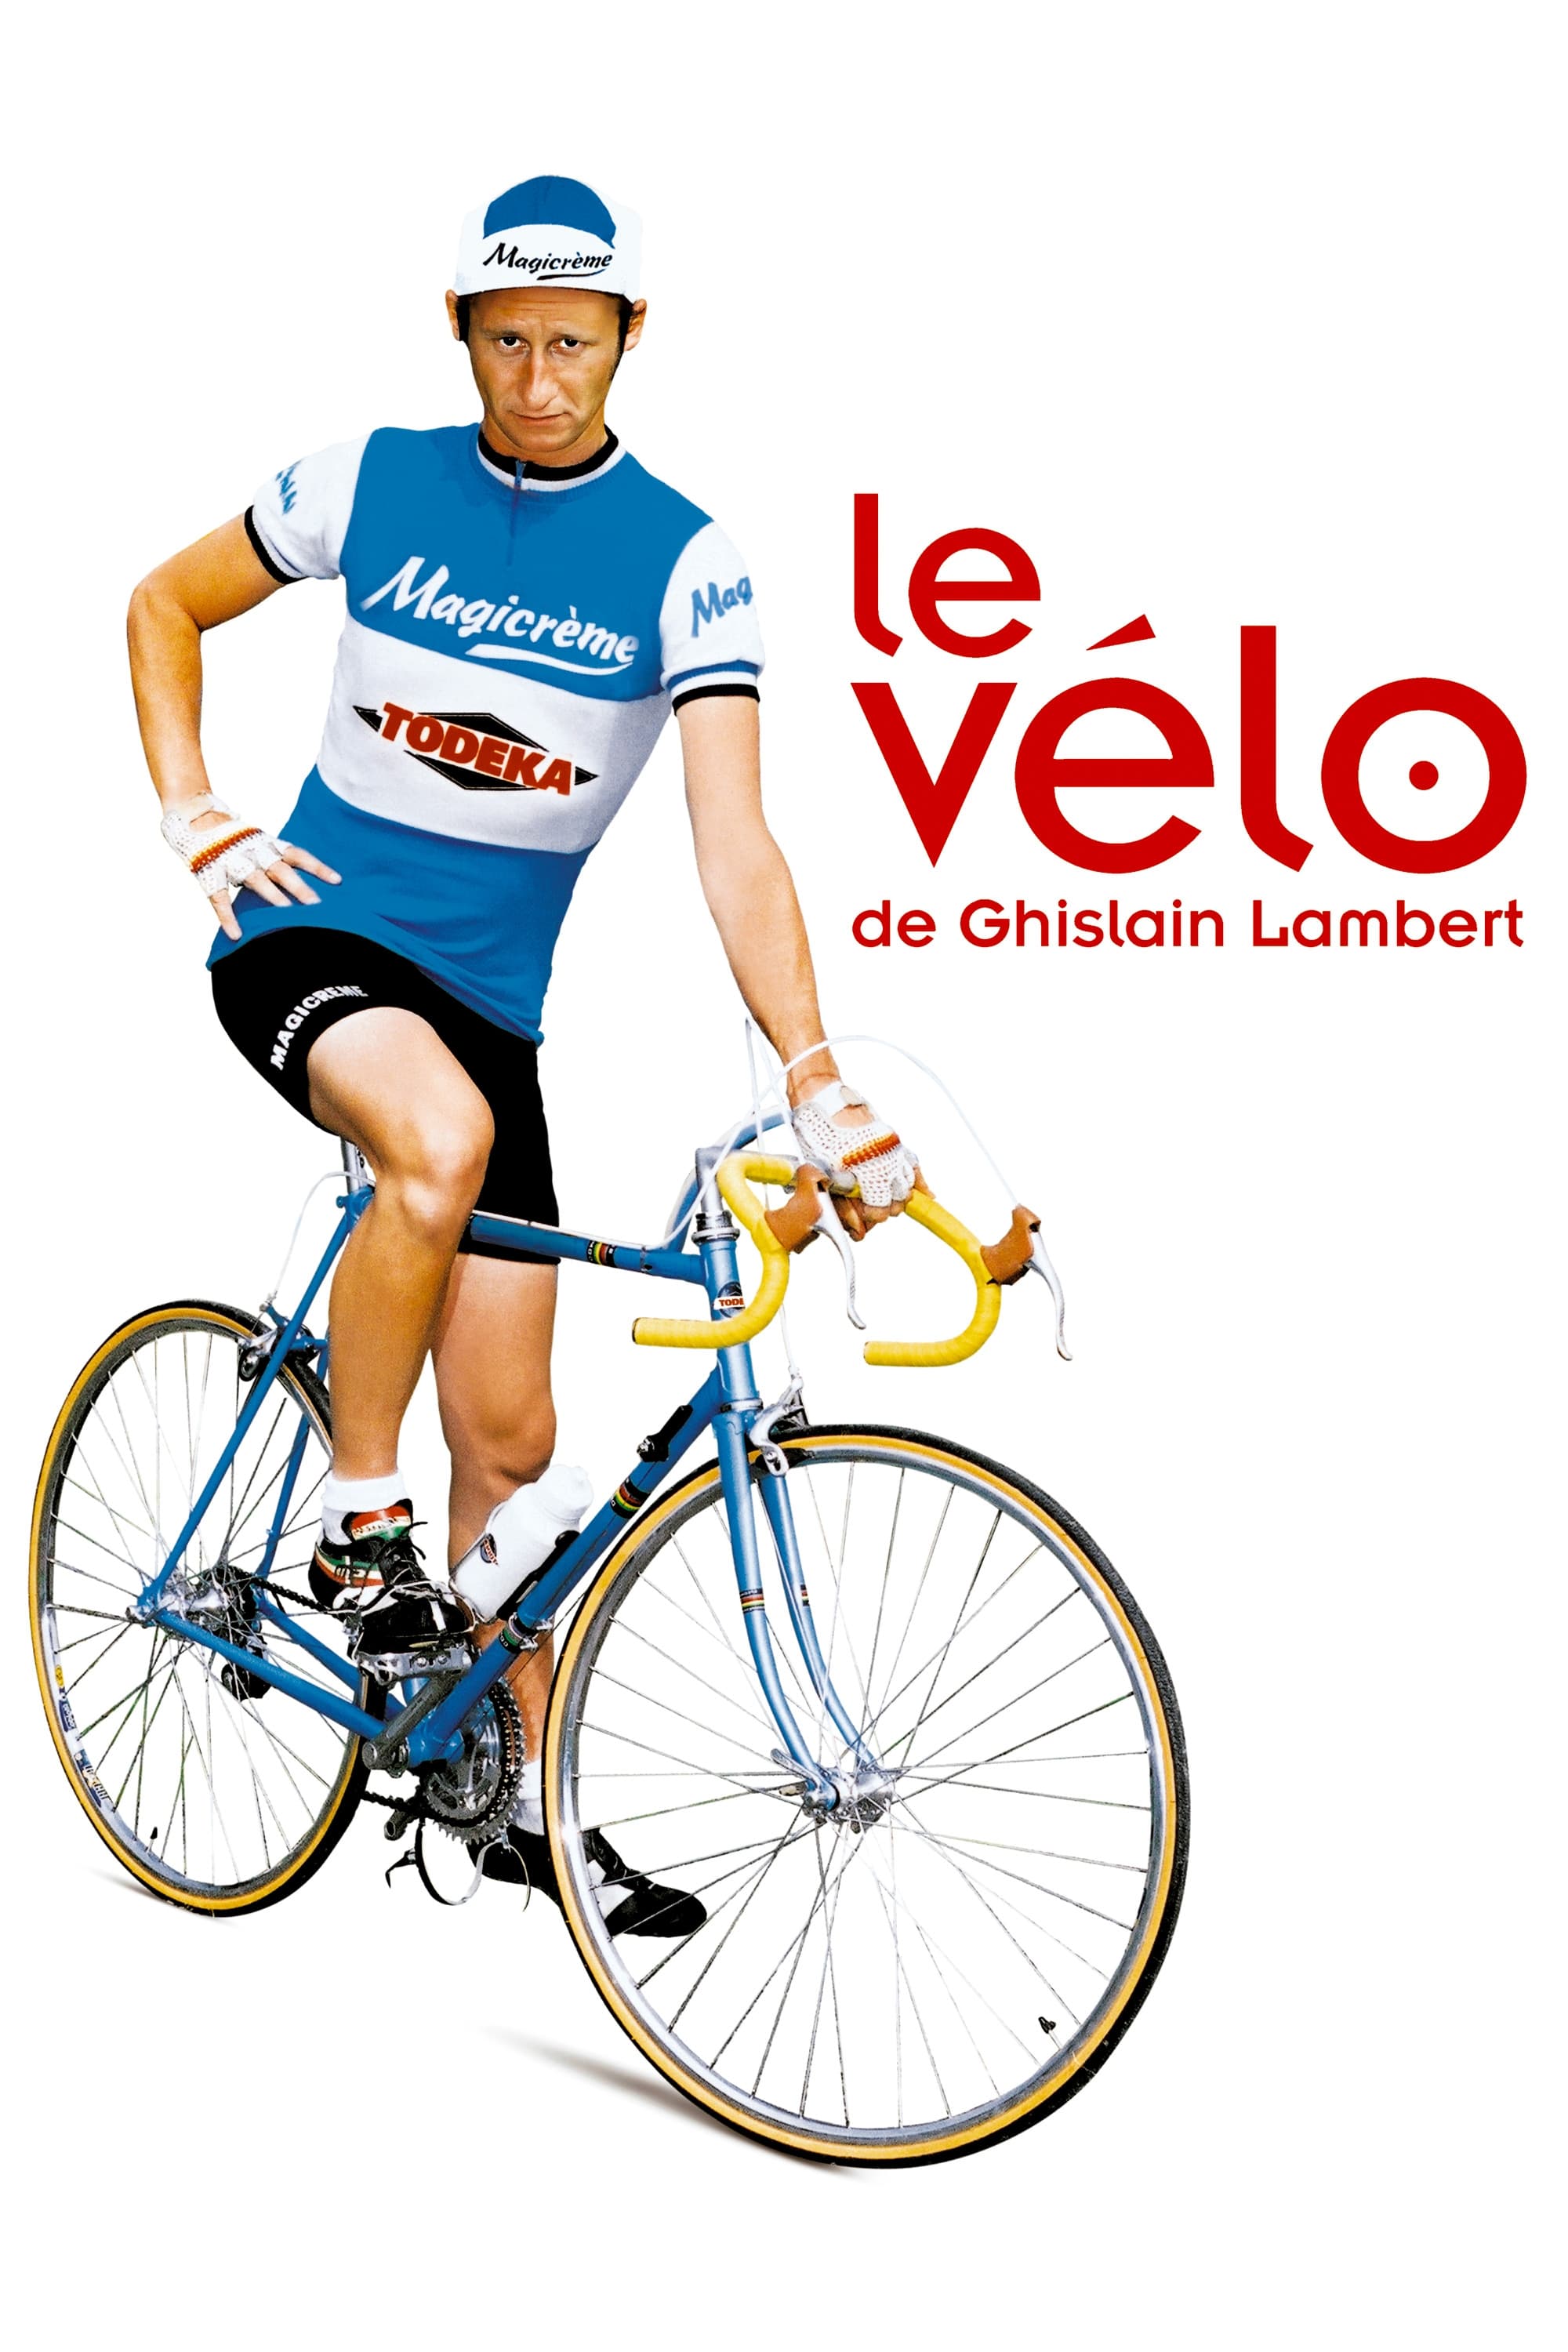 Ghislain Lambert's Bicycle (2001)